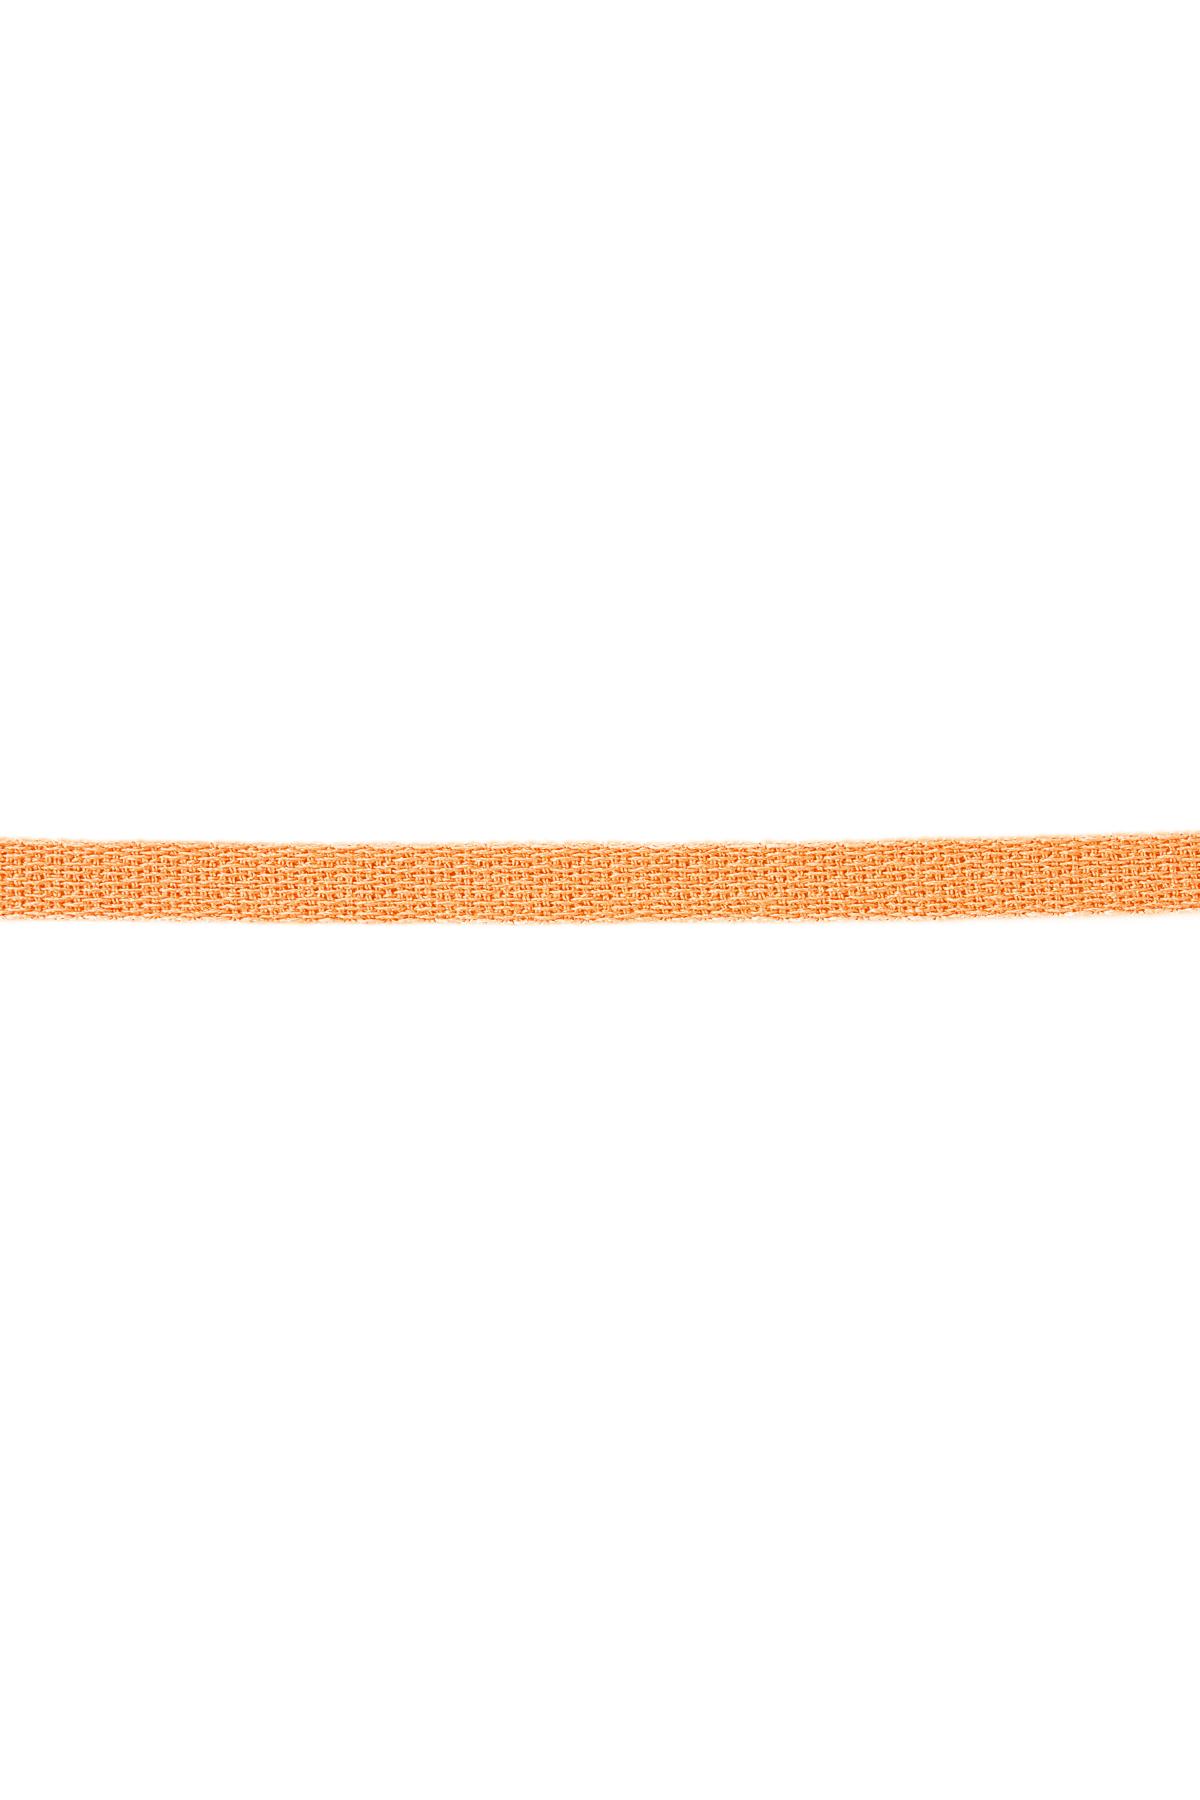 Bracelet ribbon solid color Orange Polyester h5 